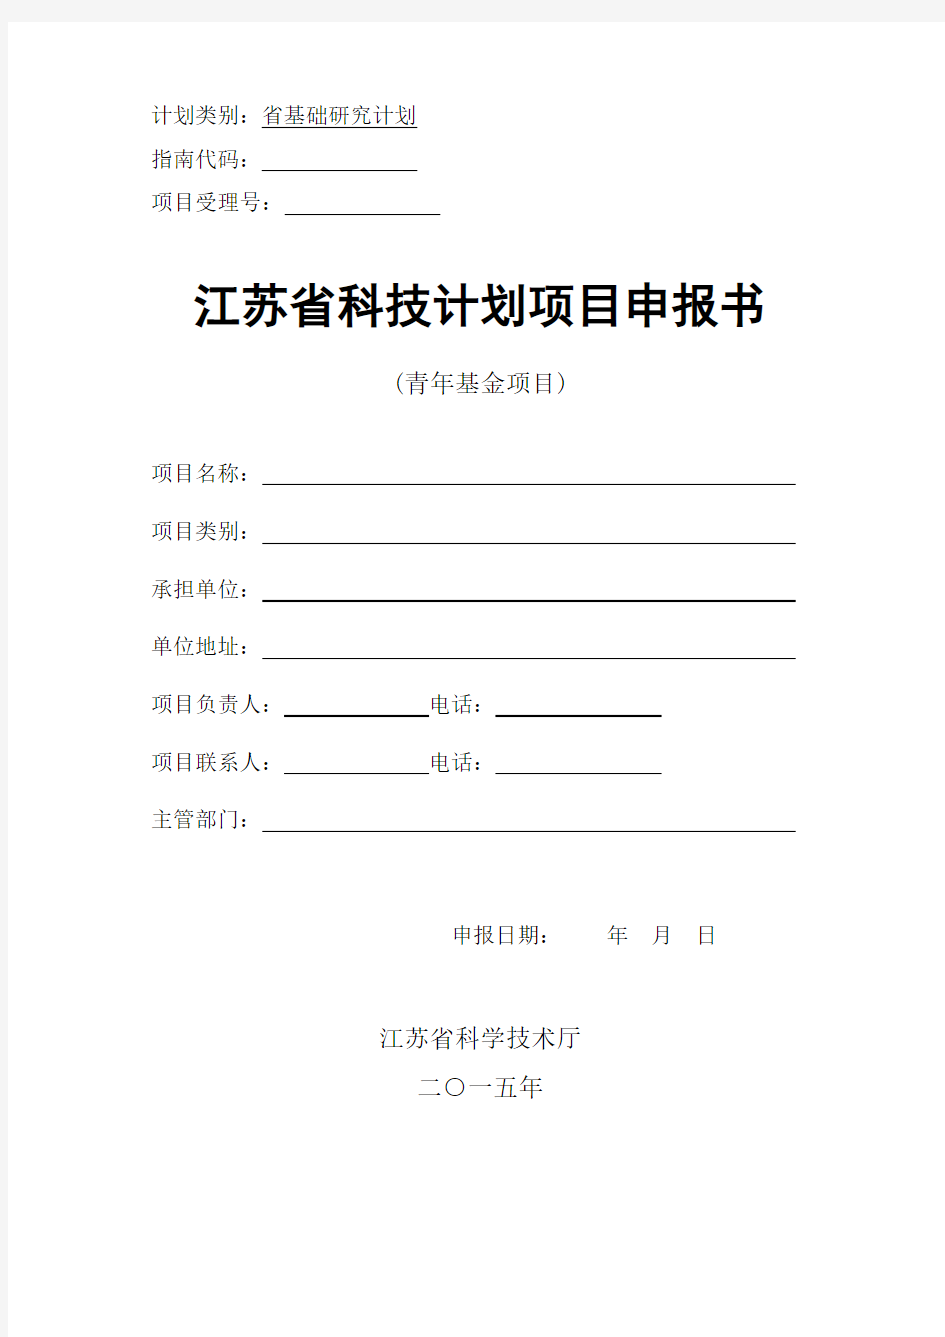 江苏省自然科学基金(青年基金)申报书